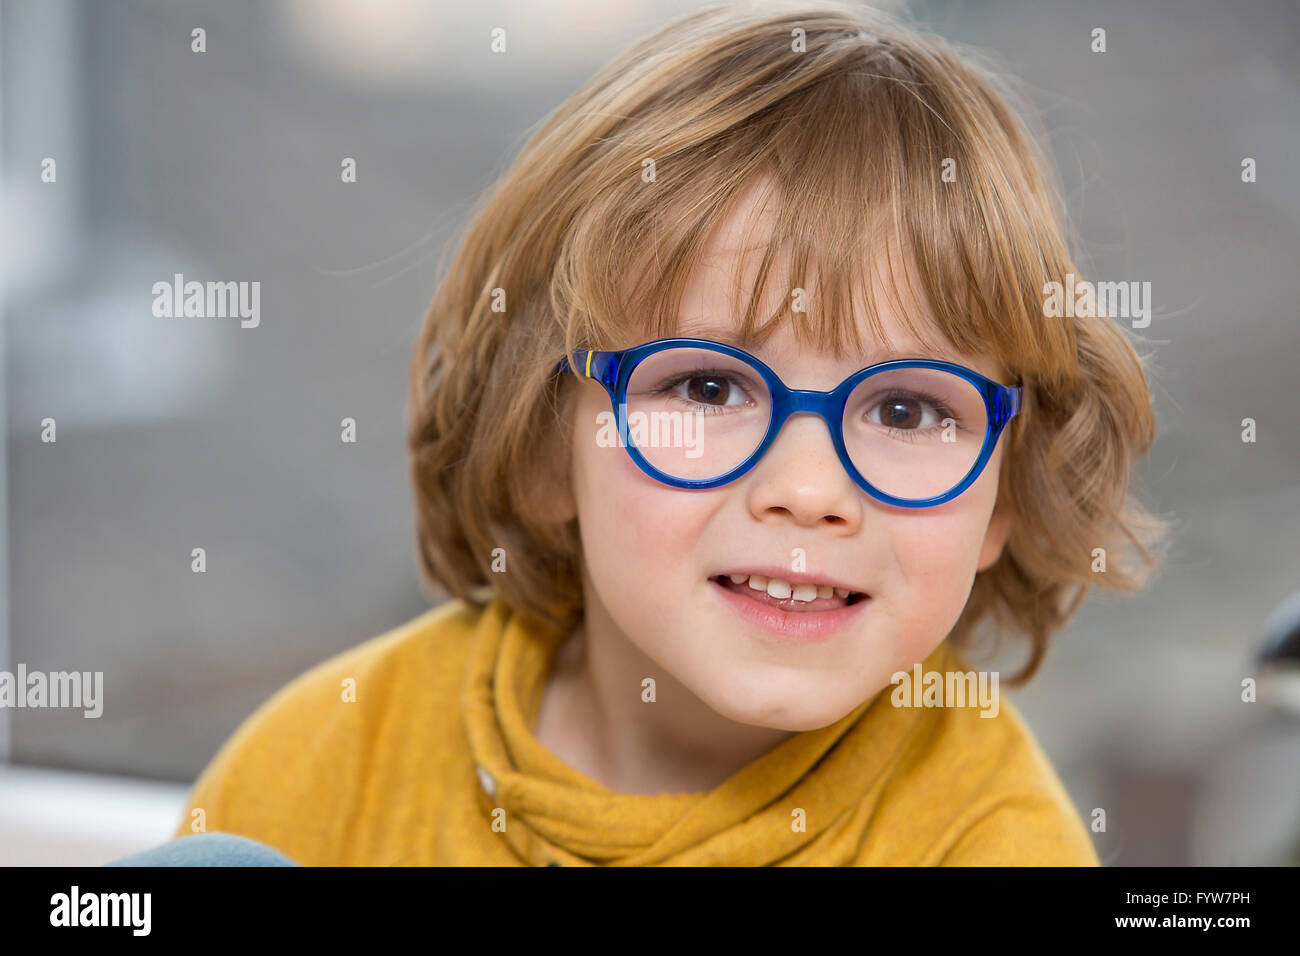 Jeune garçon, 6 ans, a l'air sympa, les sourires, avec des lunettes, avec un cadre bleu, Banque D'Images